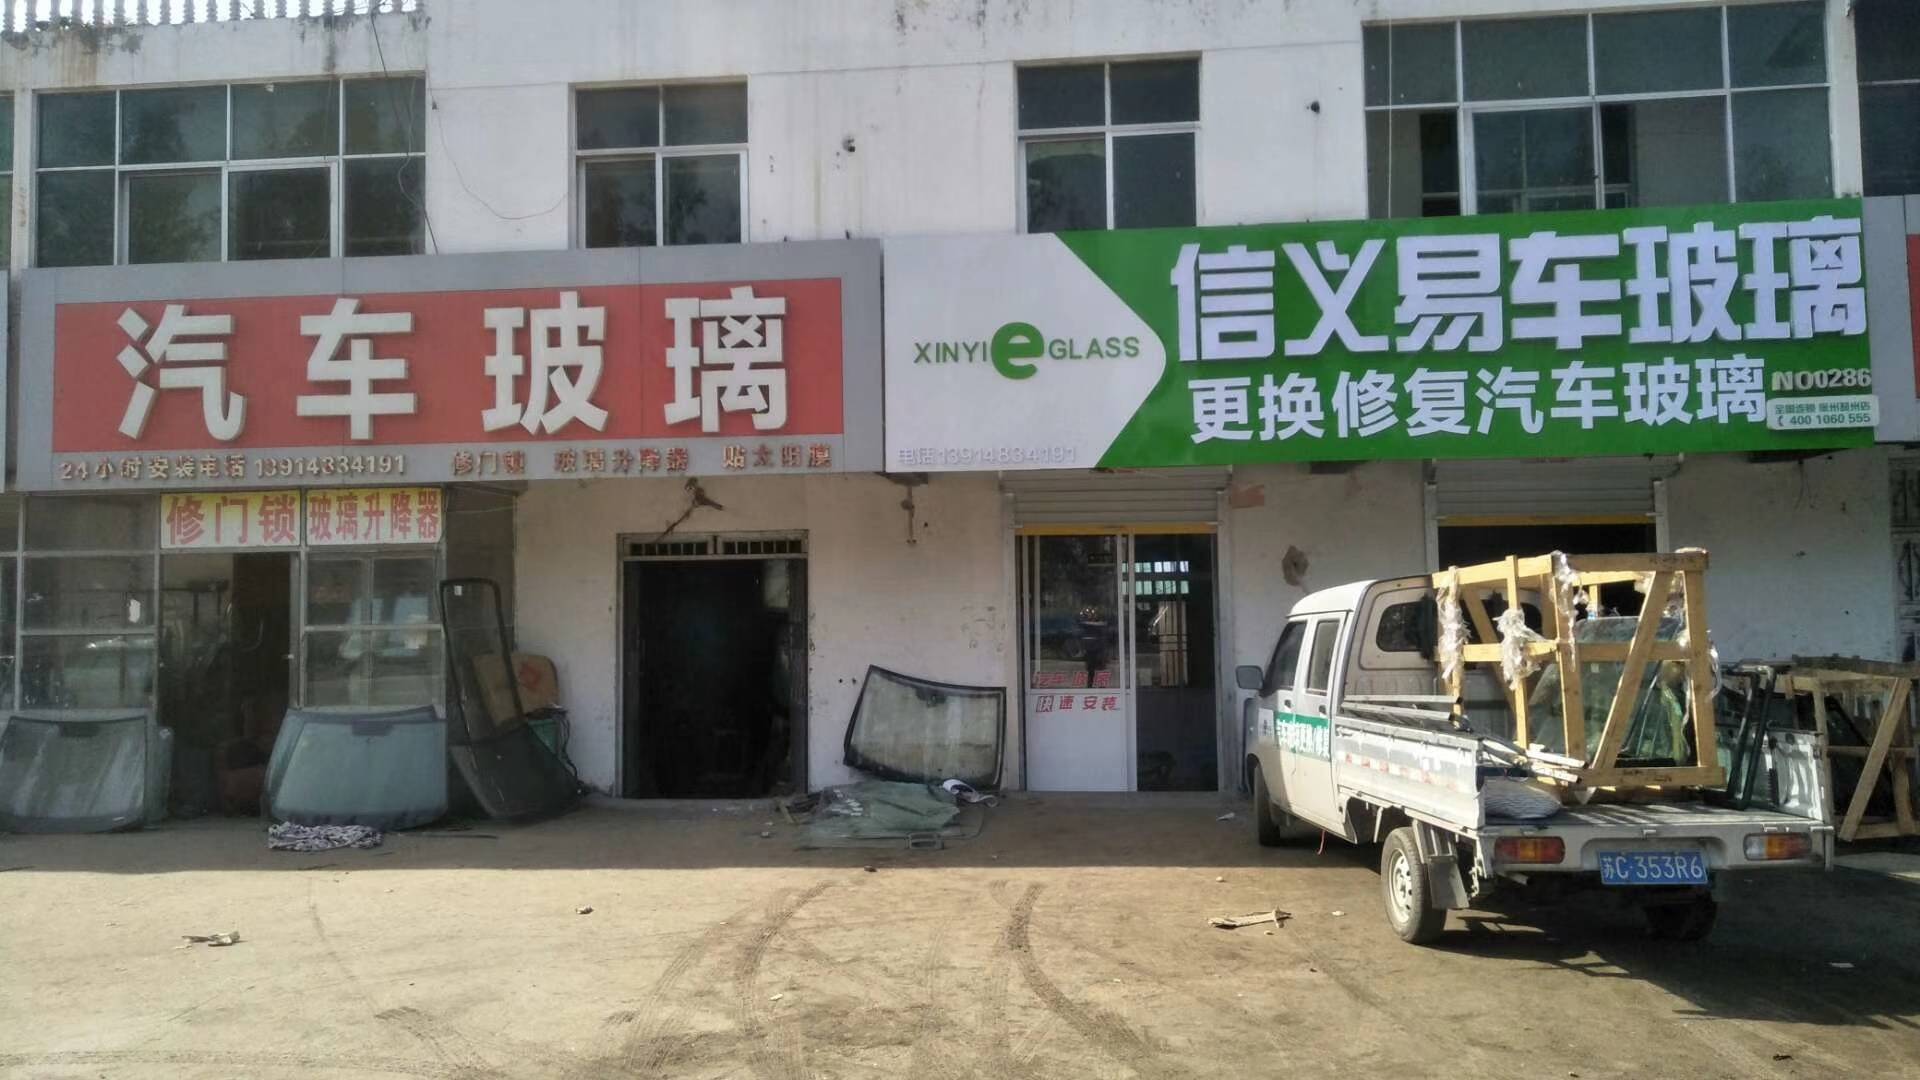 邳州信义汽车玻璃修复更换专业店!